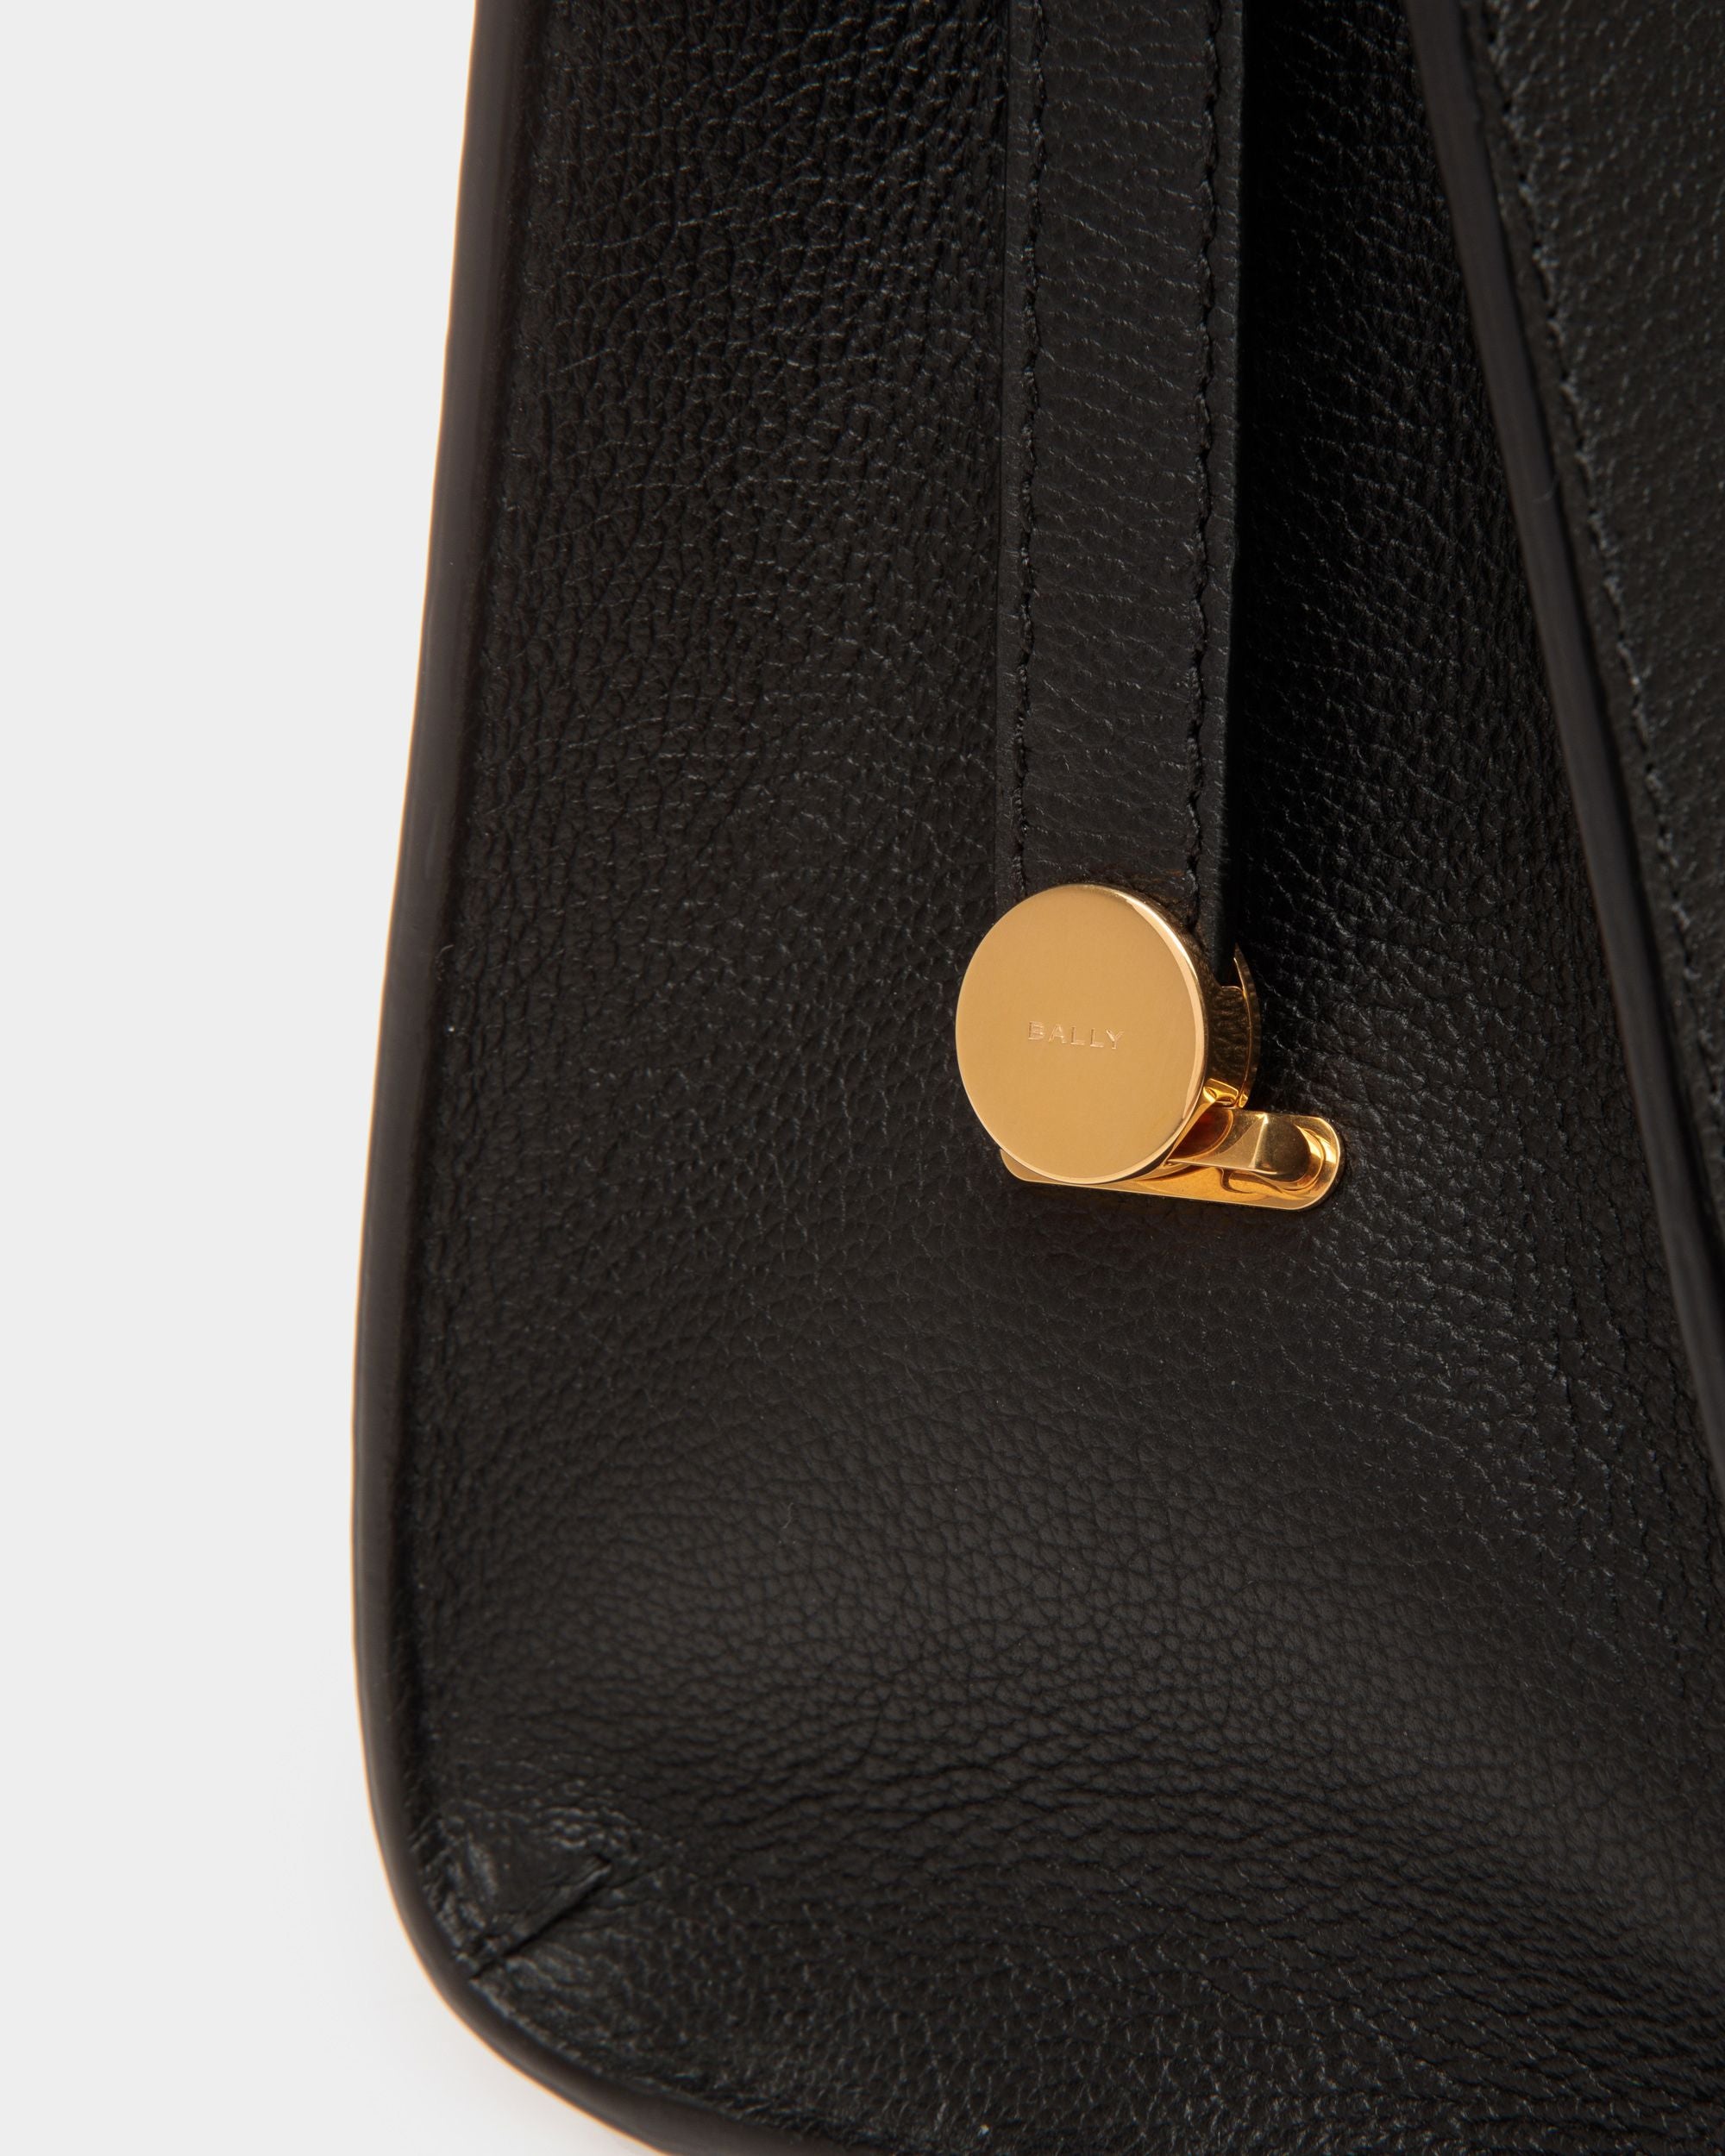 Emblem | Women's Shoulder Bag in Black Grained Leather | Bally | Still Life Detail